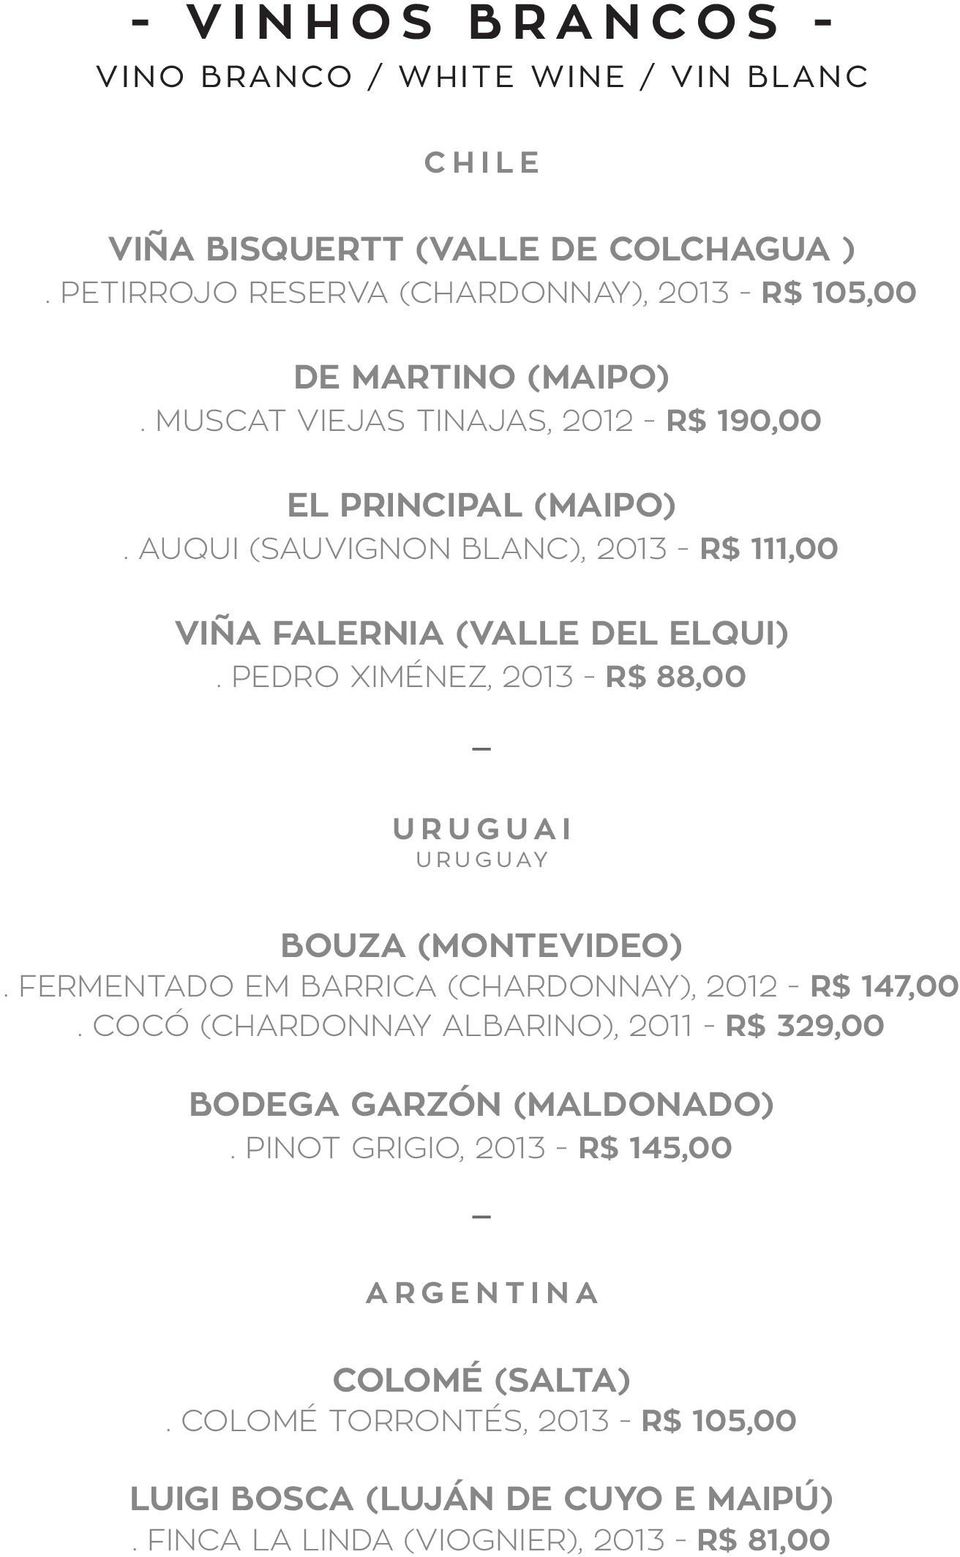 PEDRO XIMÉNEZ, 2013 - R$ 88,00 URUGUAI URUGUAY BOUZA (MONTEVIDEO). FERMENTADO EM BARRICA (CHARDONNAY), 2012 - R$ 147,00.